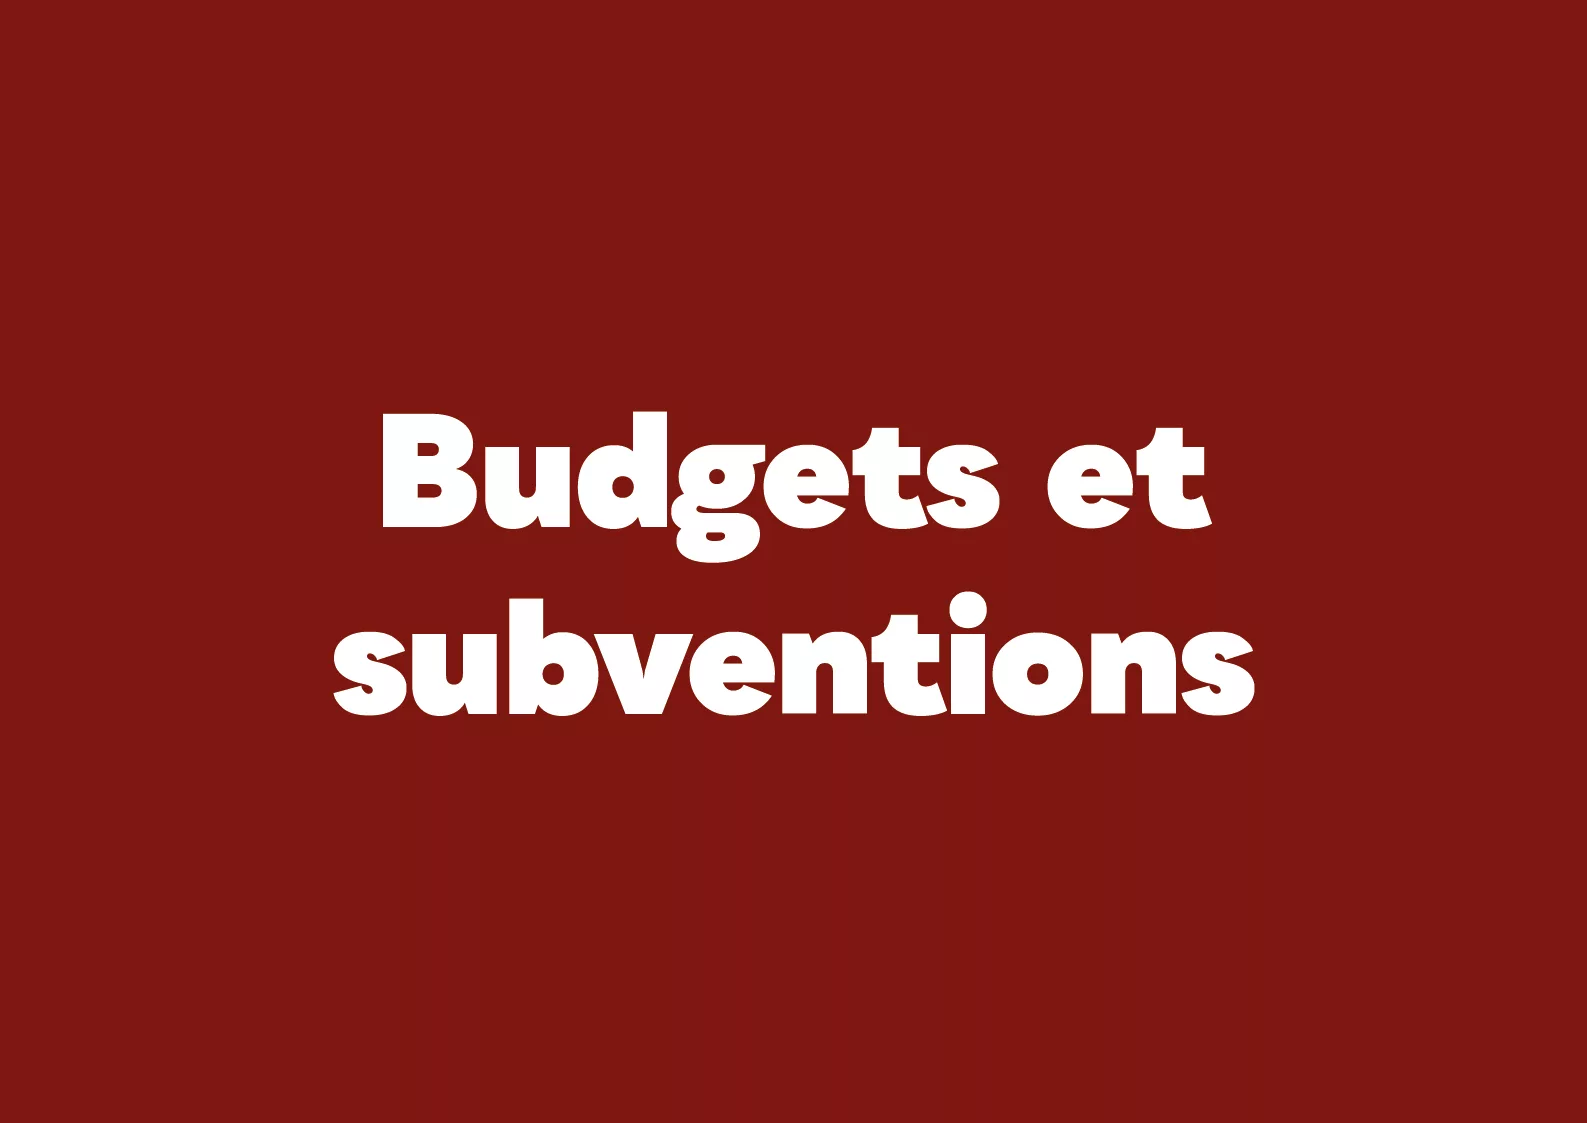 Budgets et subventions